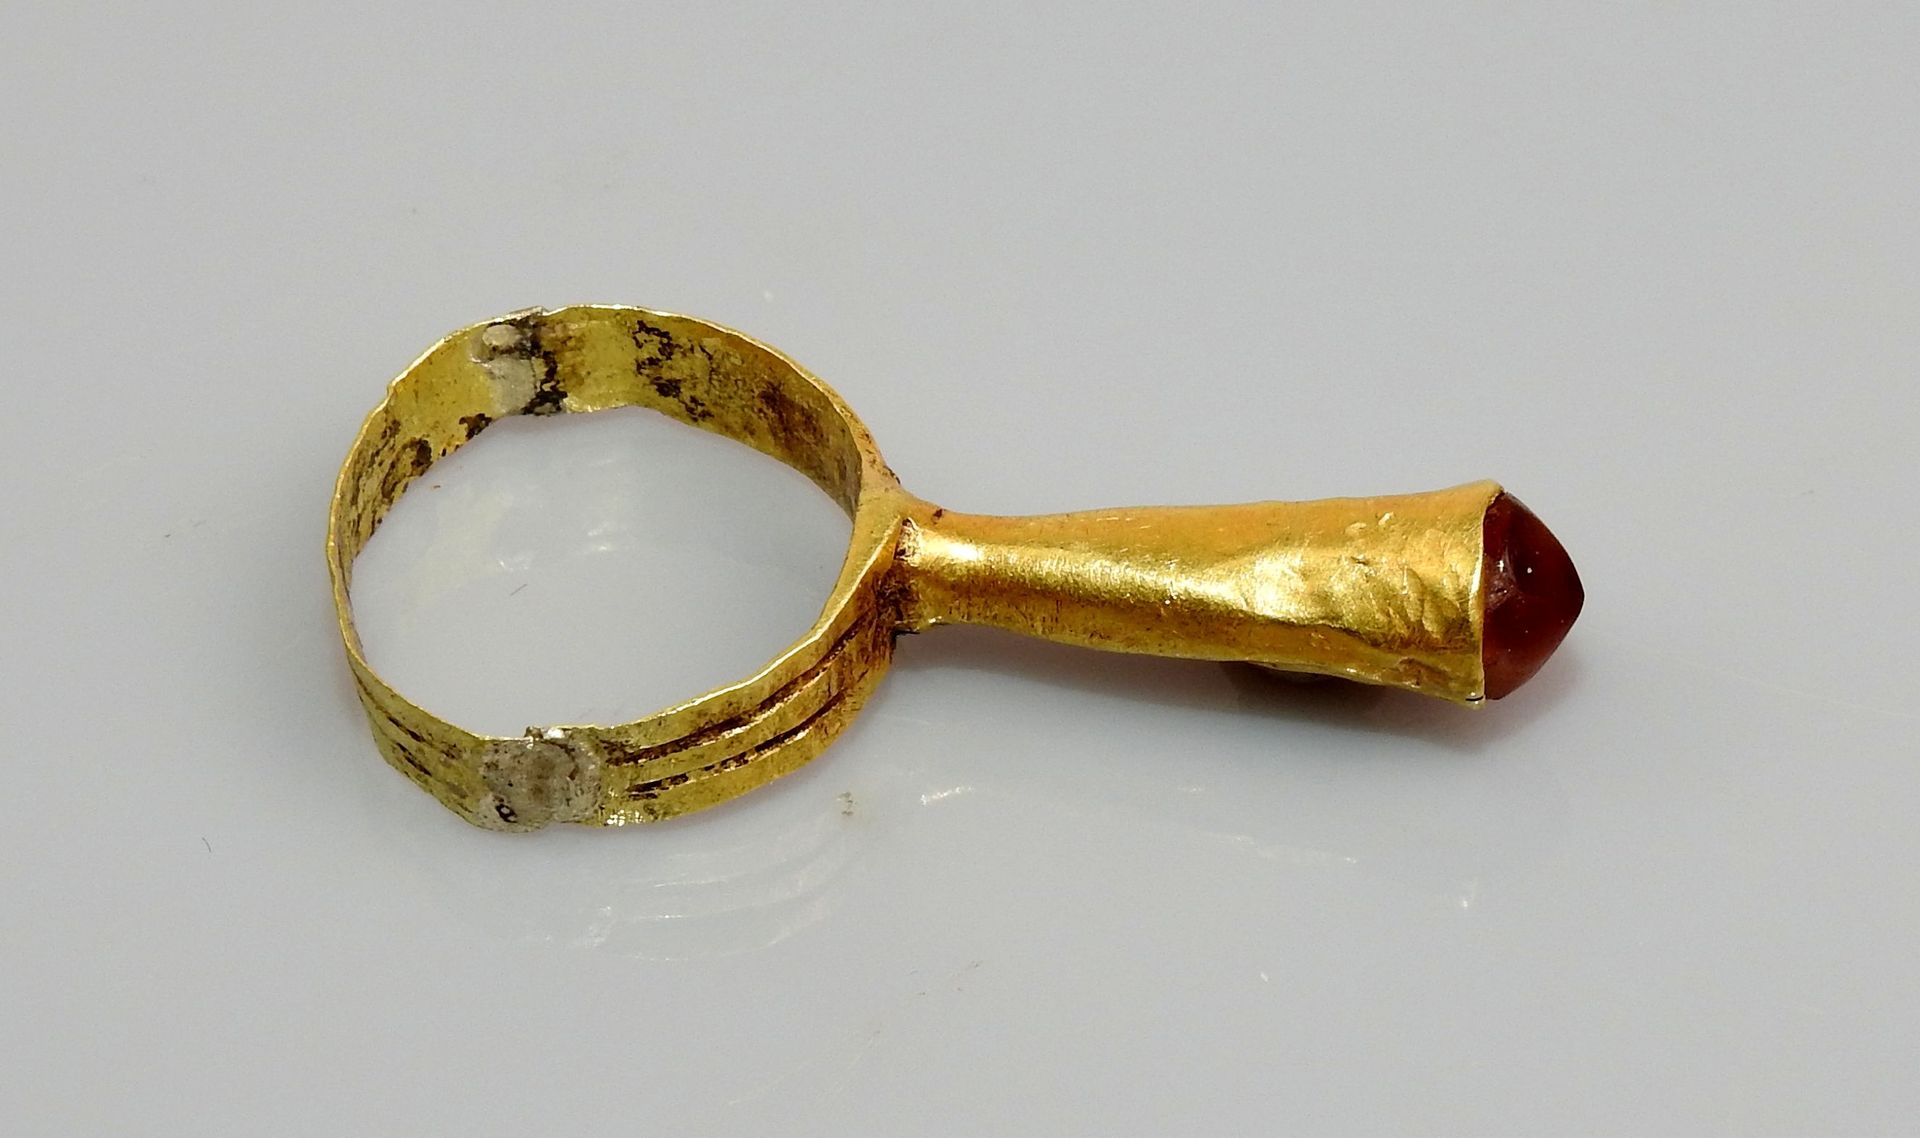 Null 末端有石头的管状戒指

金和玛瑙戒指可能已修复 1.7厘米

拜占庭时期